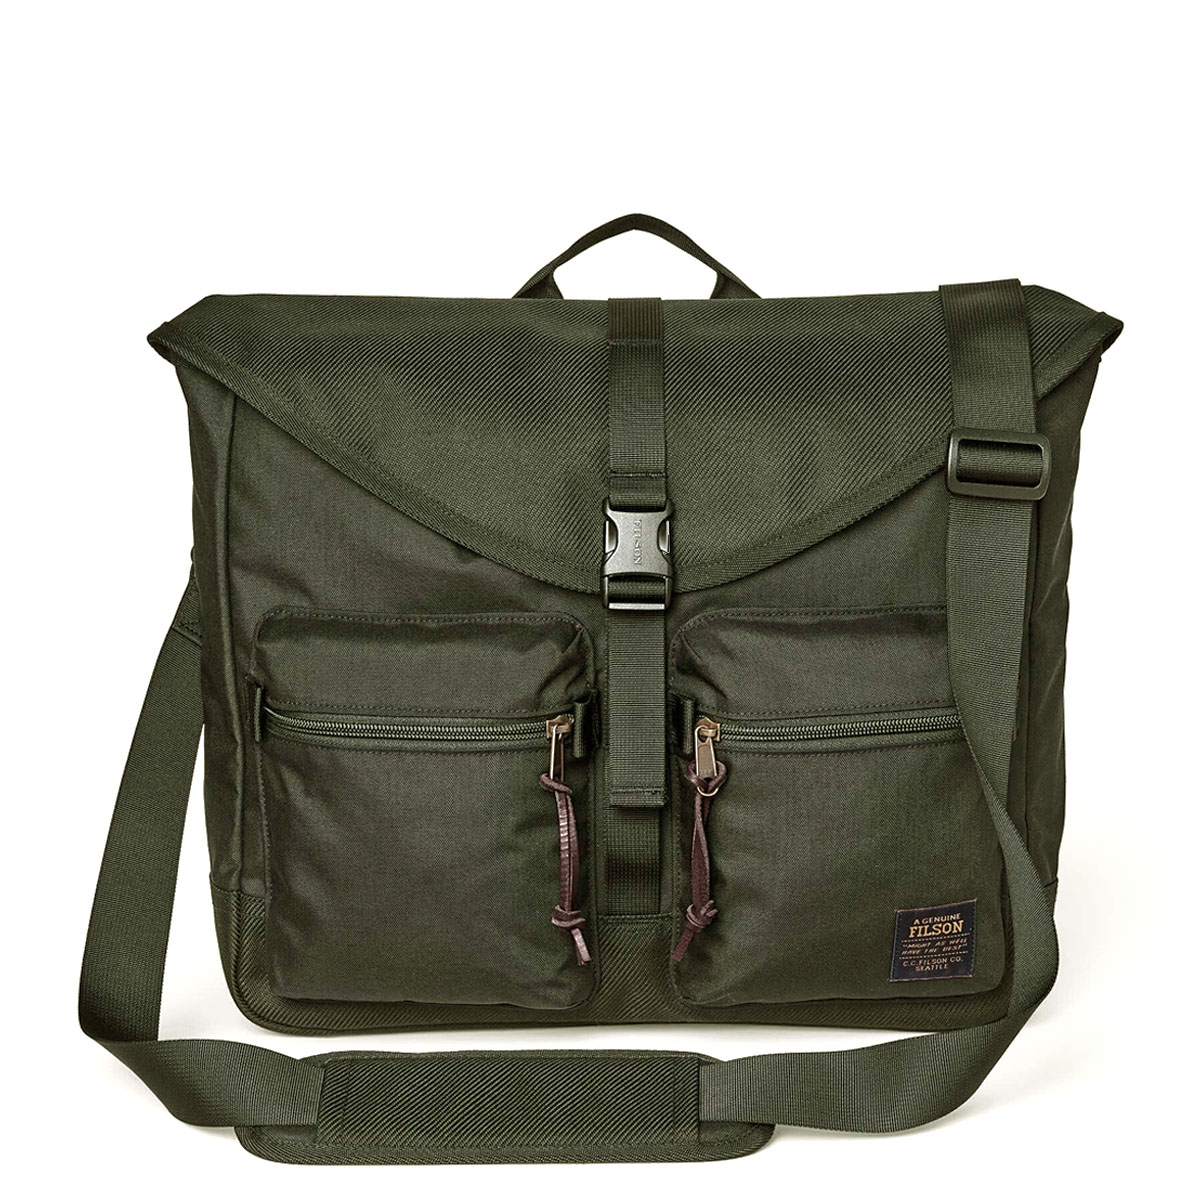 Filson Surveyor Messenger Bag Service Green, strapazierfähige und vielseitige Umhängetasche, die auch starker Beanspruchung standhält